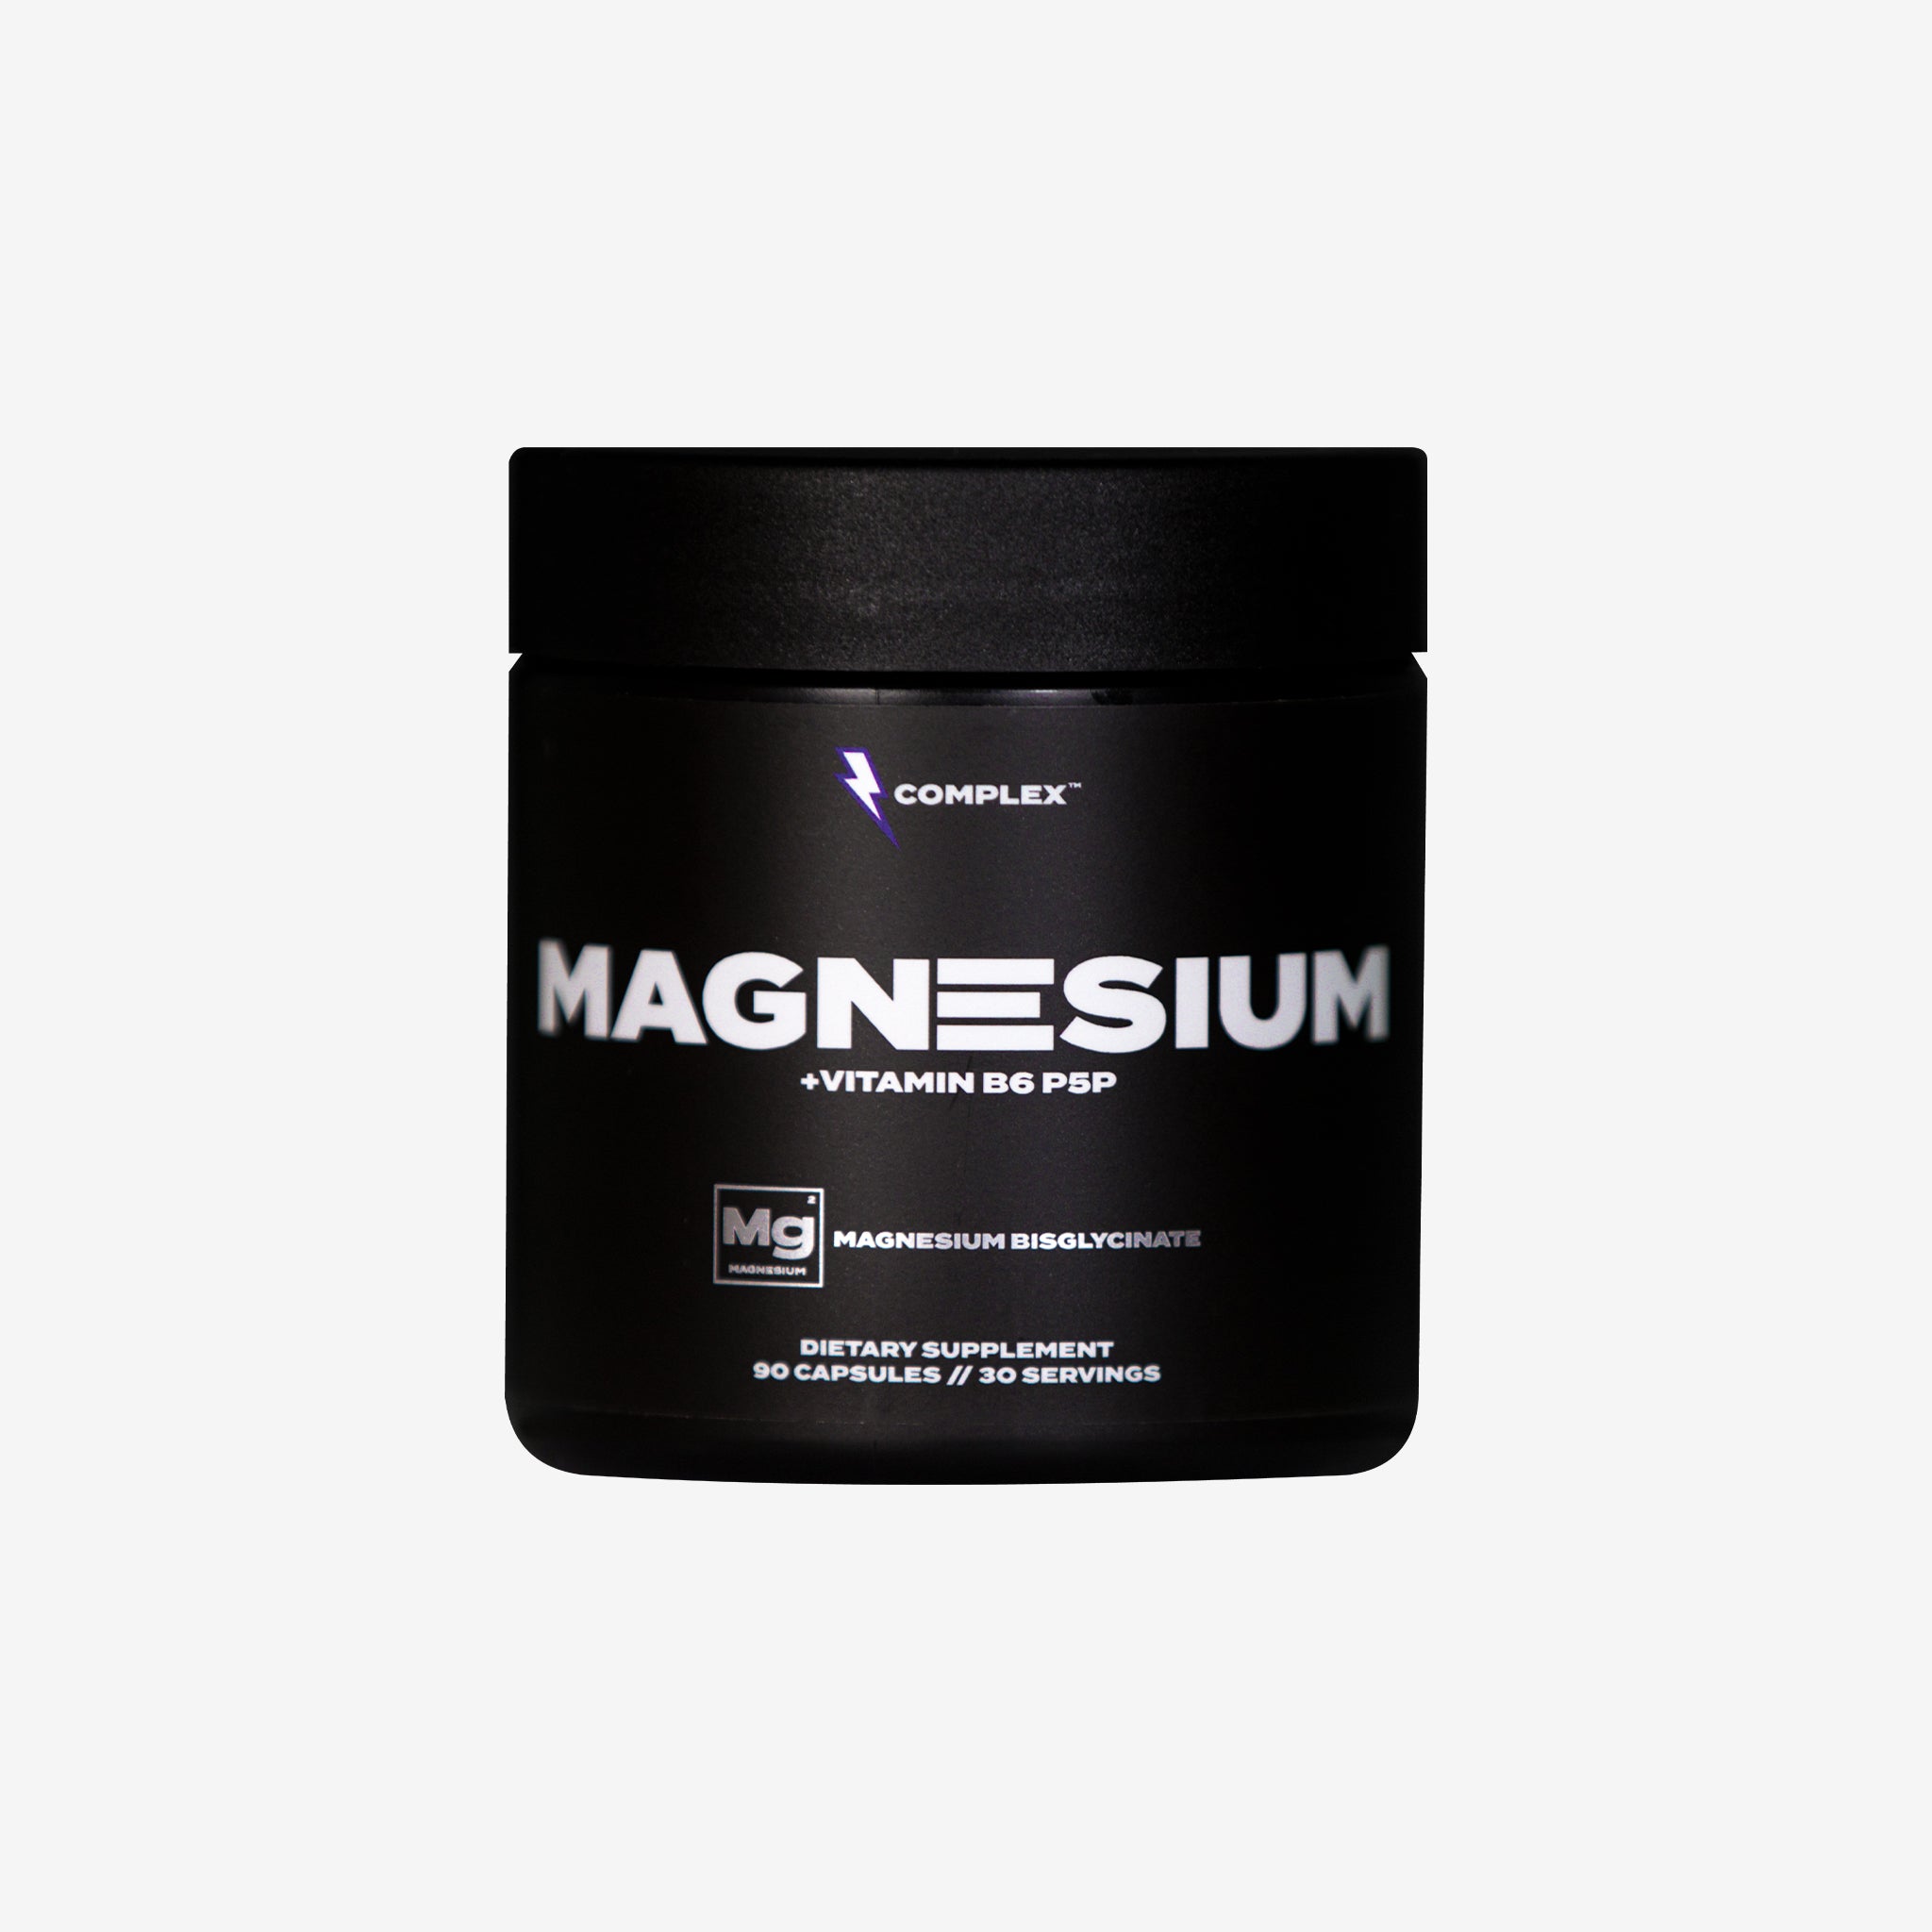 Proč brát magnesium?